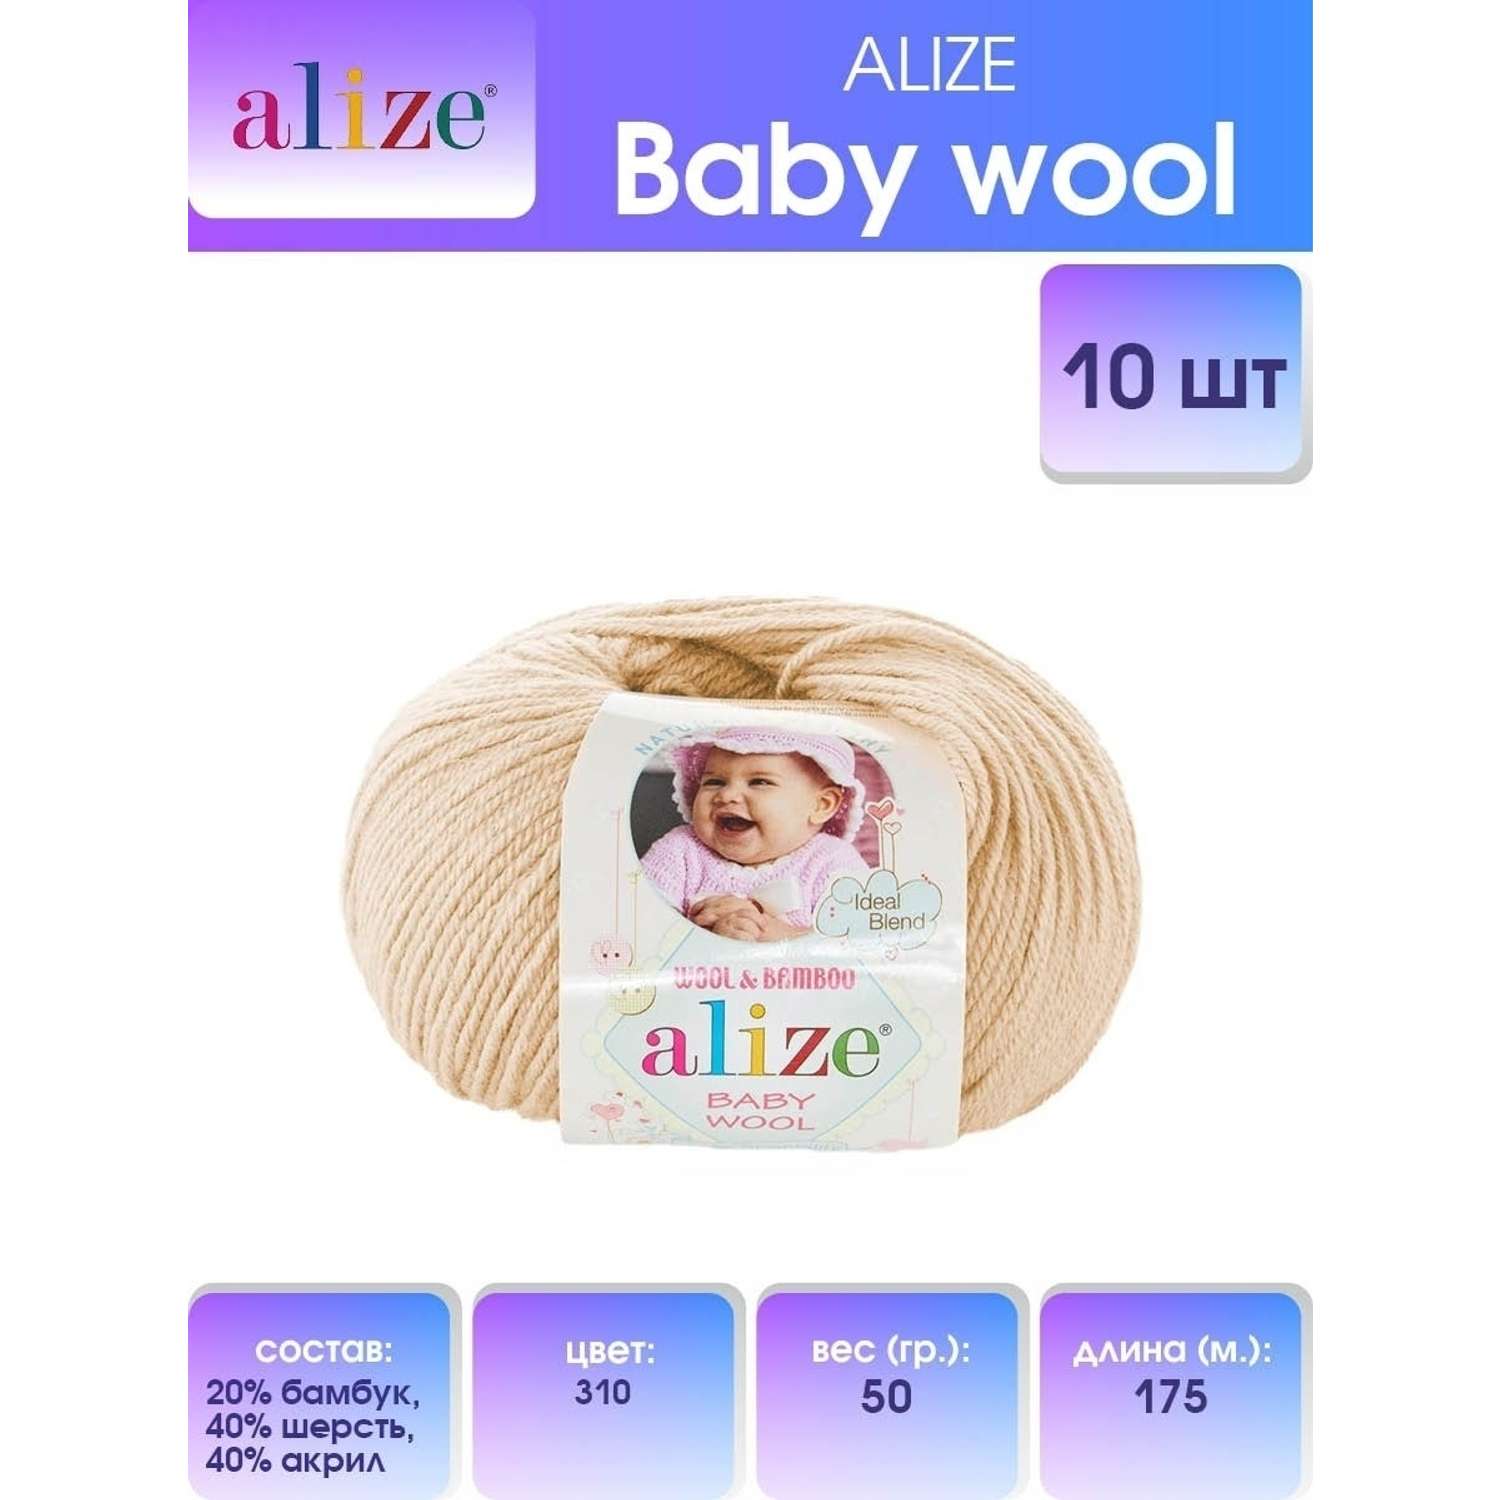 Пряжа для вязания Alize baby wool бамбук шерсть акрил мягкая 50 гр 175 м 310 медовый 10 мотков - фото 1